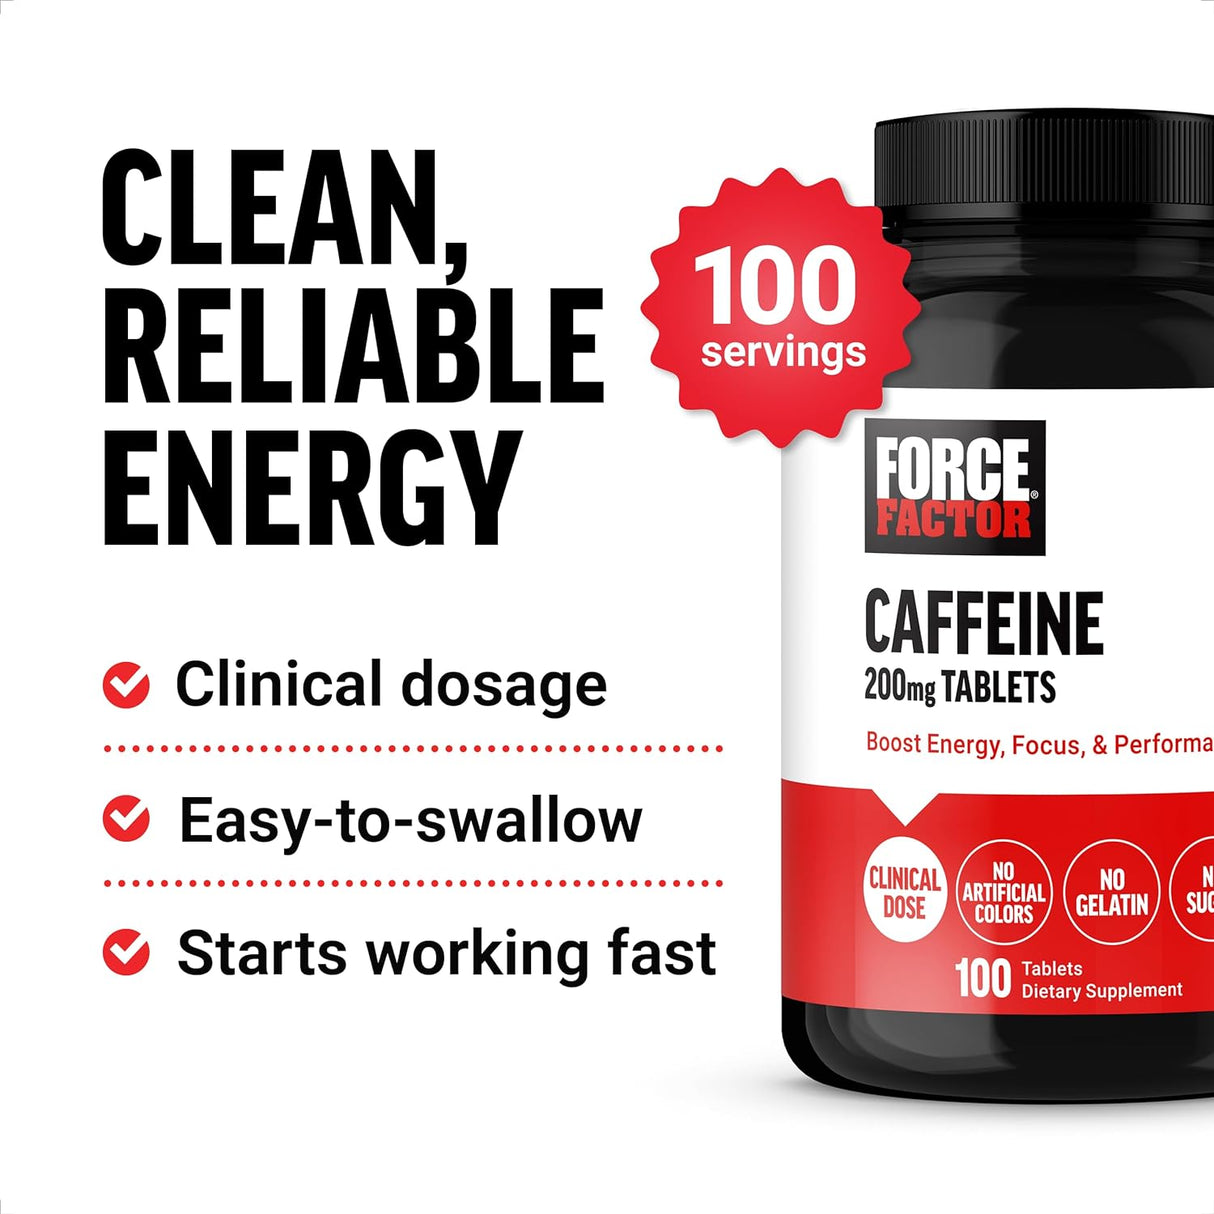 Force Factor Caffeine Pills 200Mg. 100 Tabletas